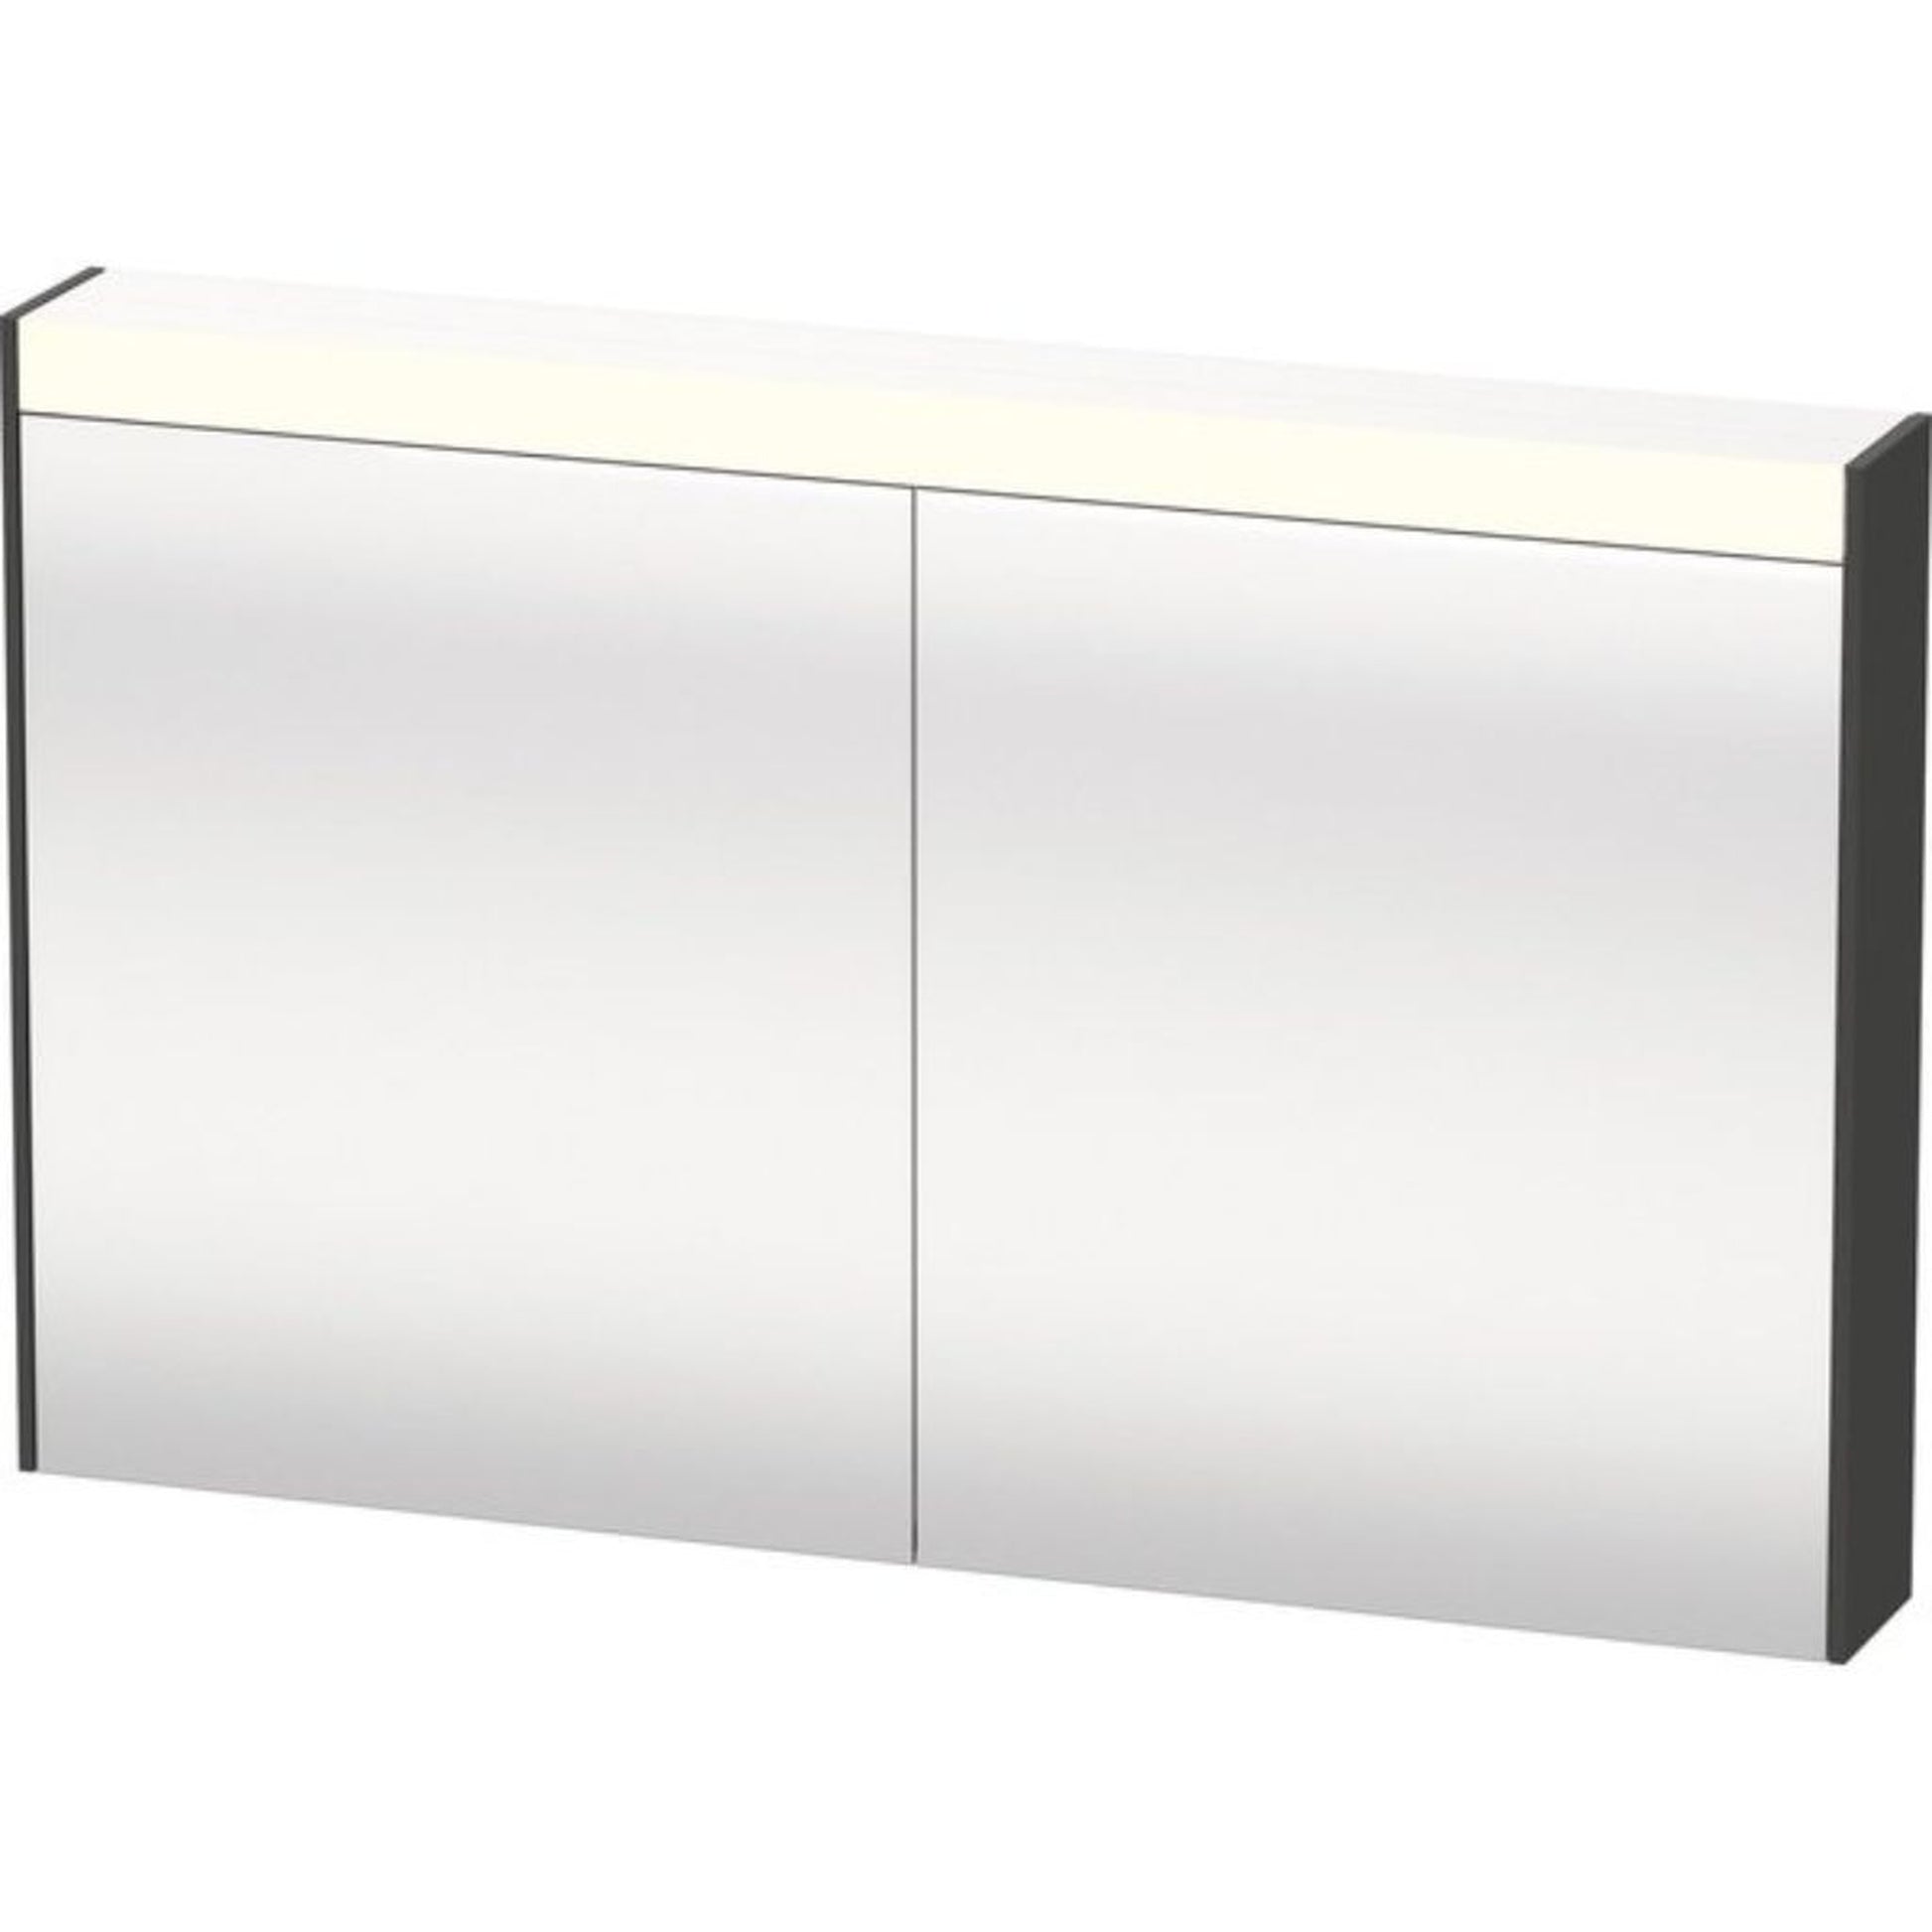 Duravit Brioso 48" x 30" x 6" Mirror Cabinet With Lighting Graphite Matt